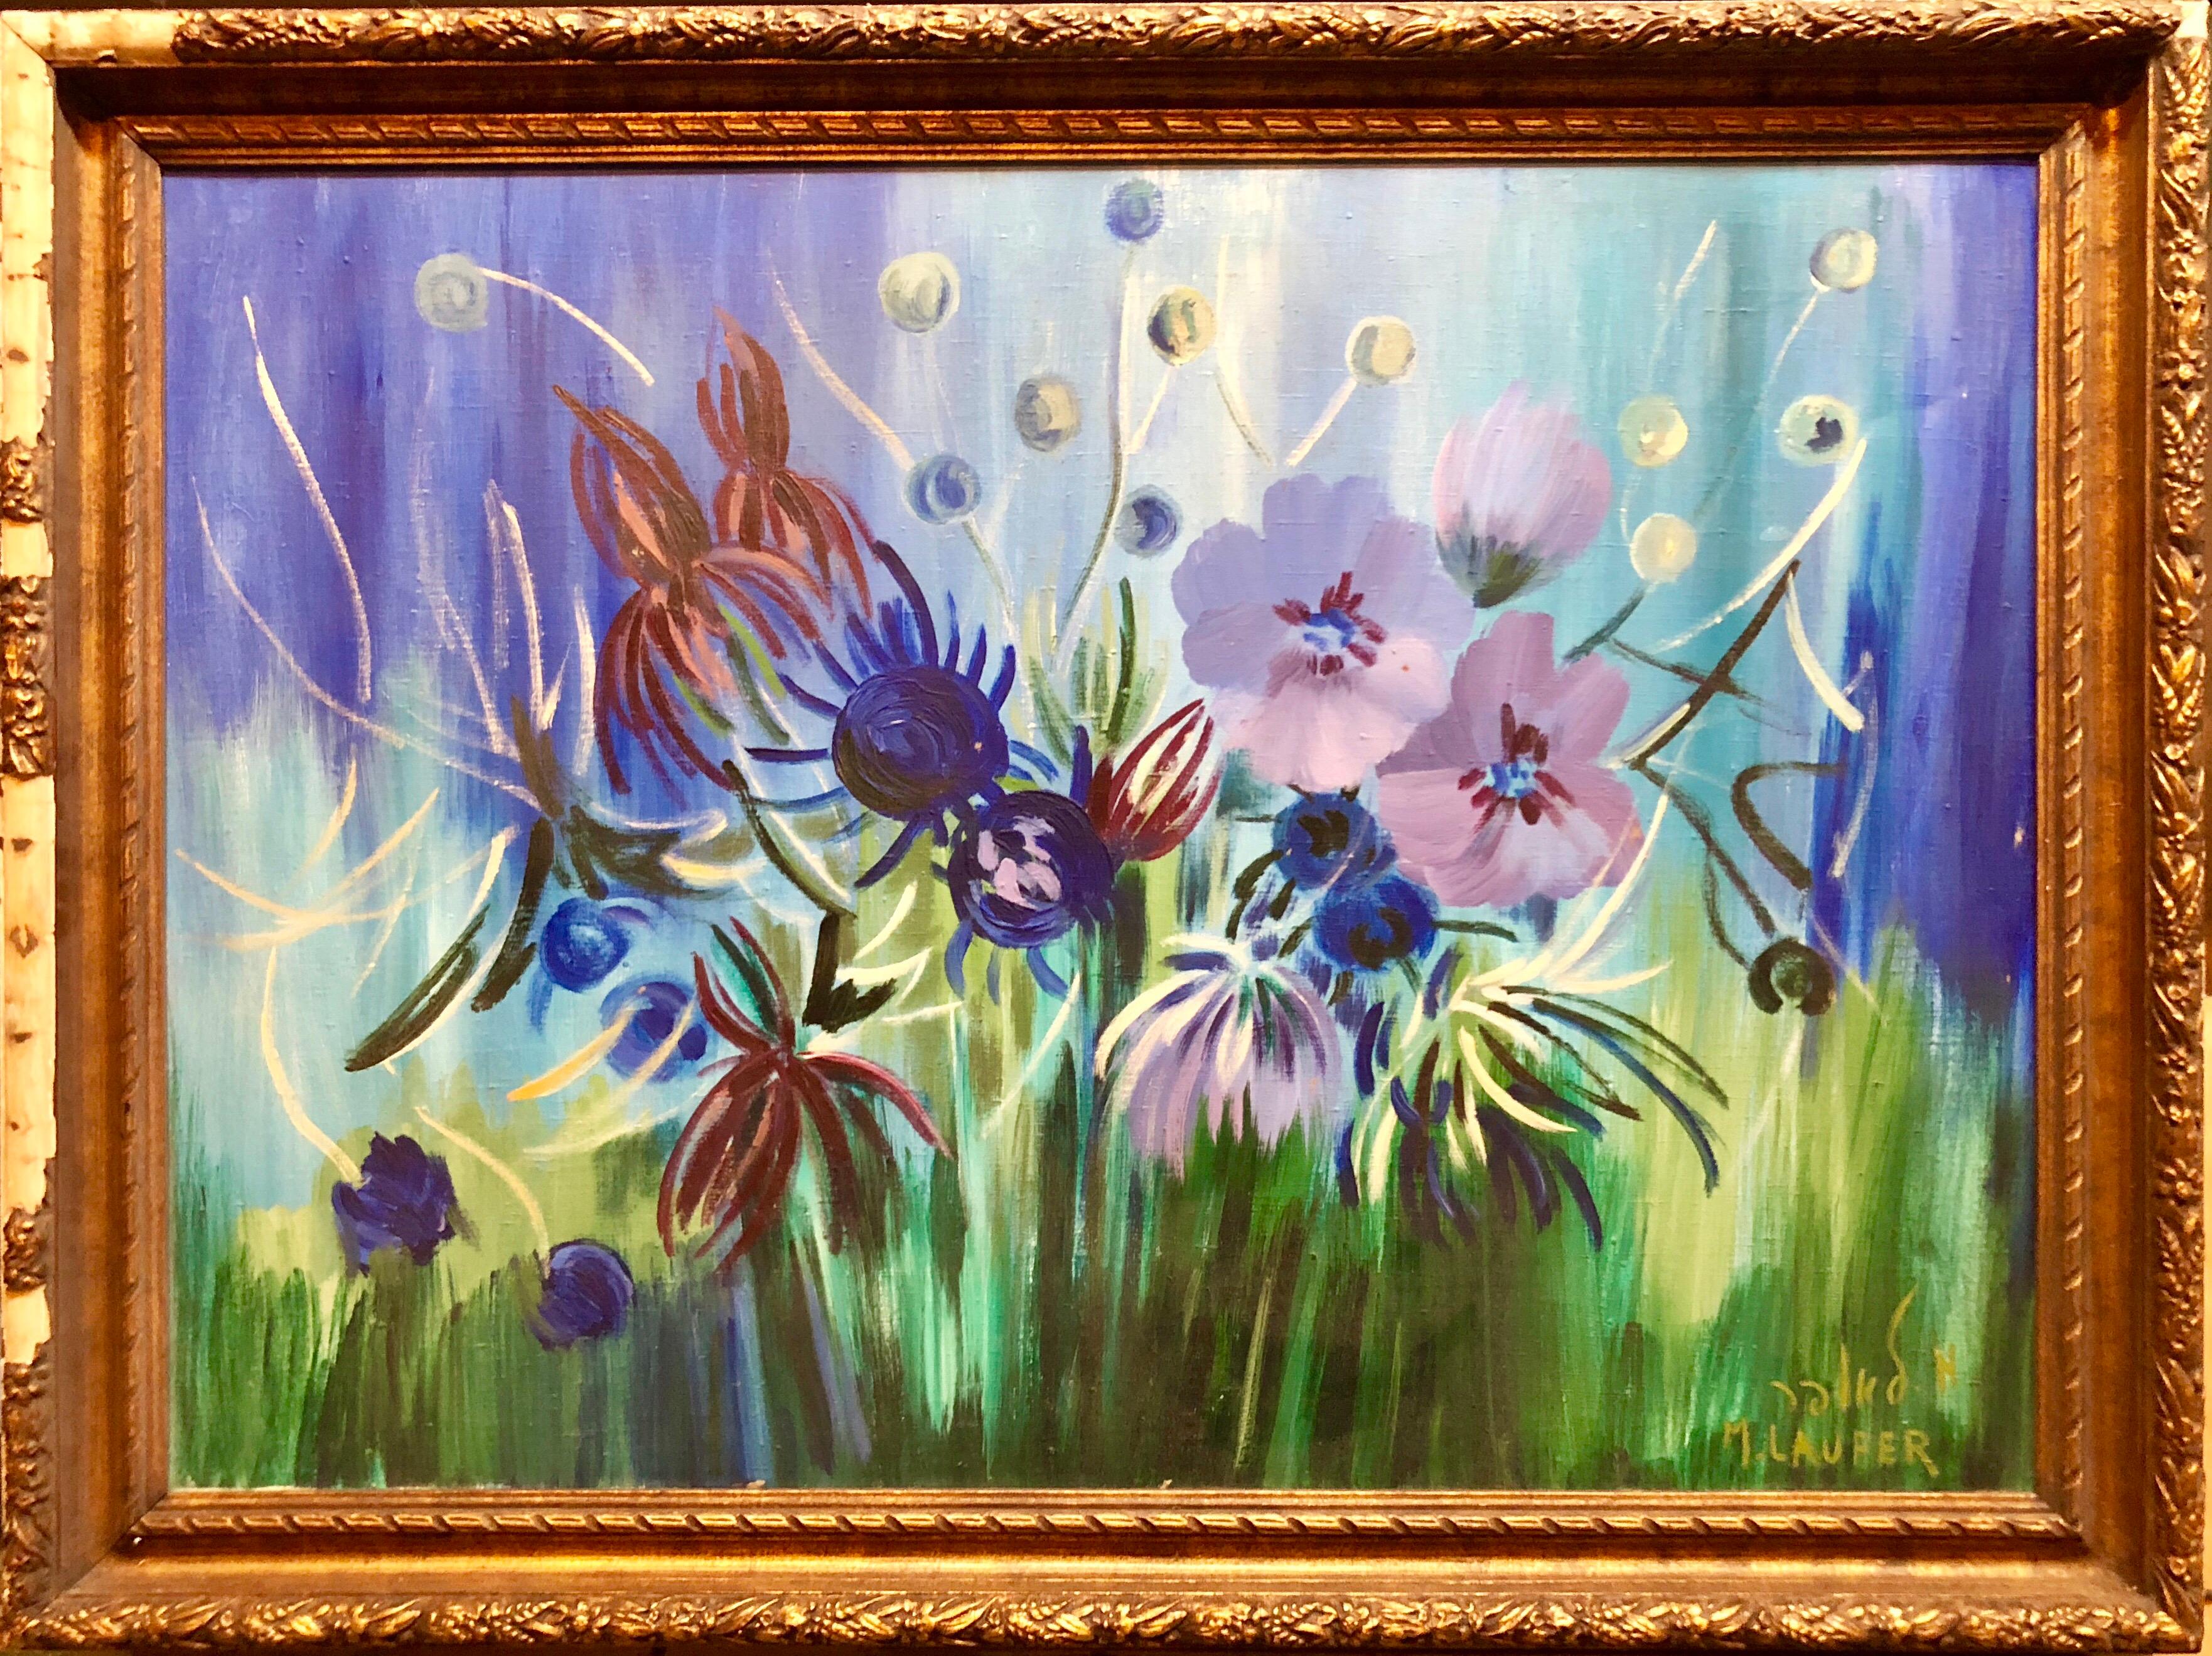 Grande peinture à l'huile israélienne de fleurs surréalistes vibrantes - Painting de Milia Laufer